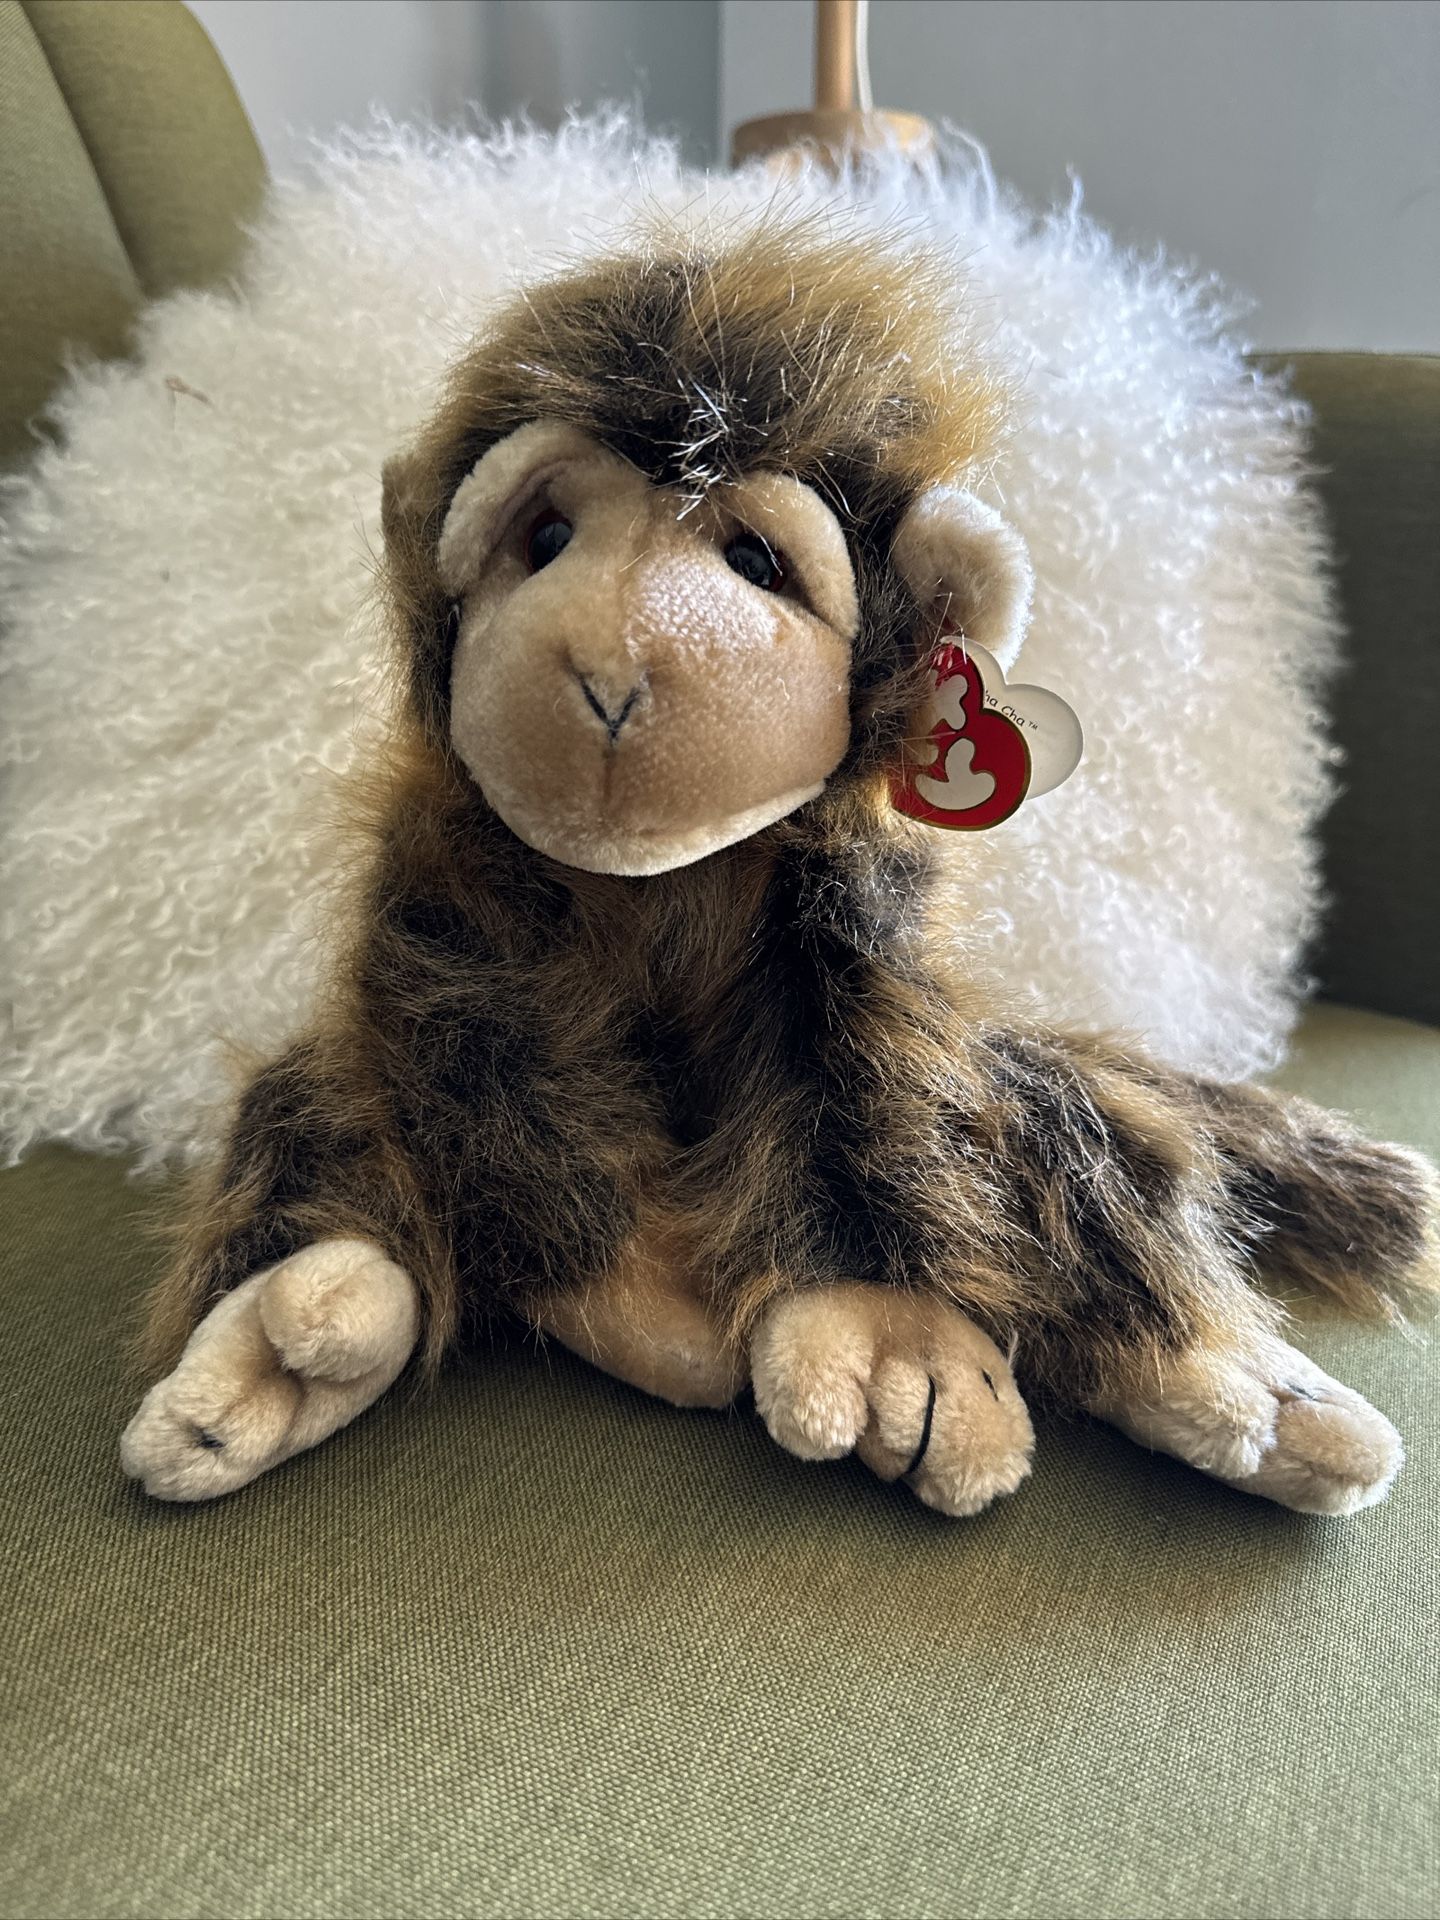 TY Plush 12” Vintage Monkey 